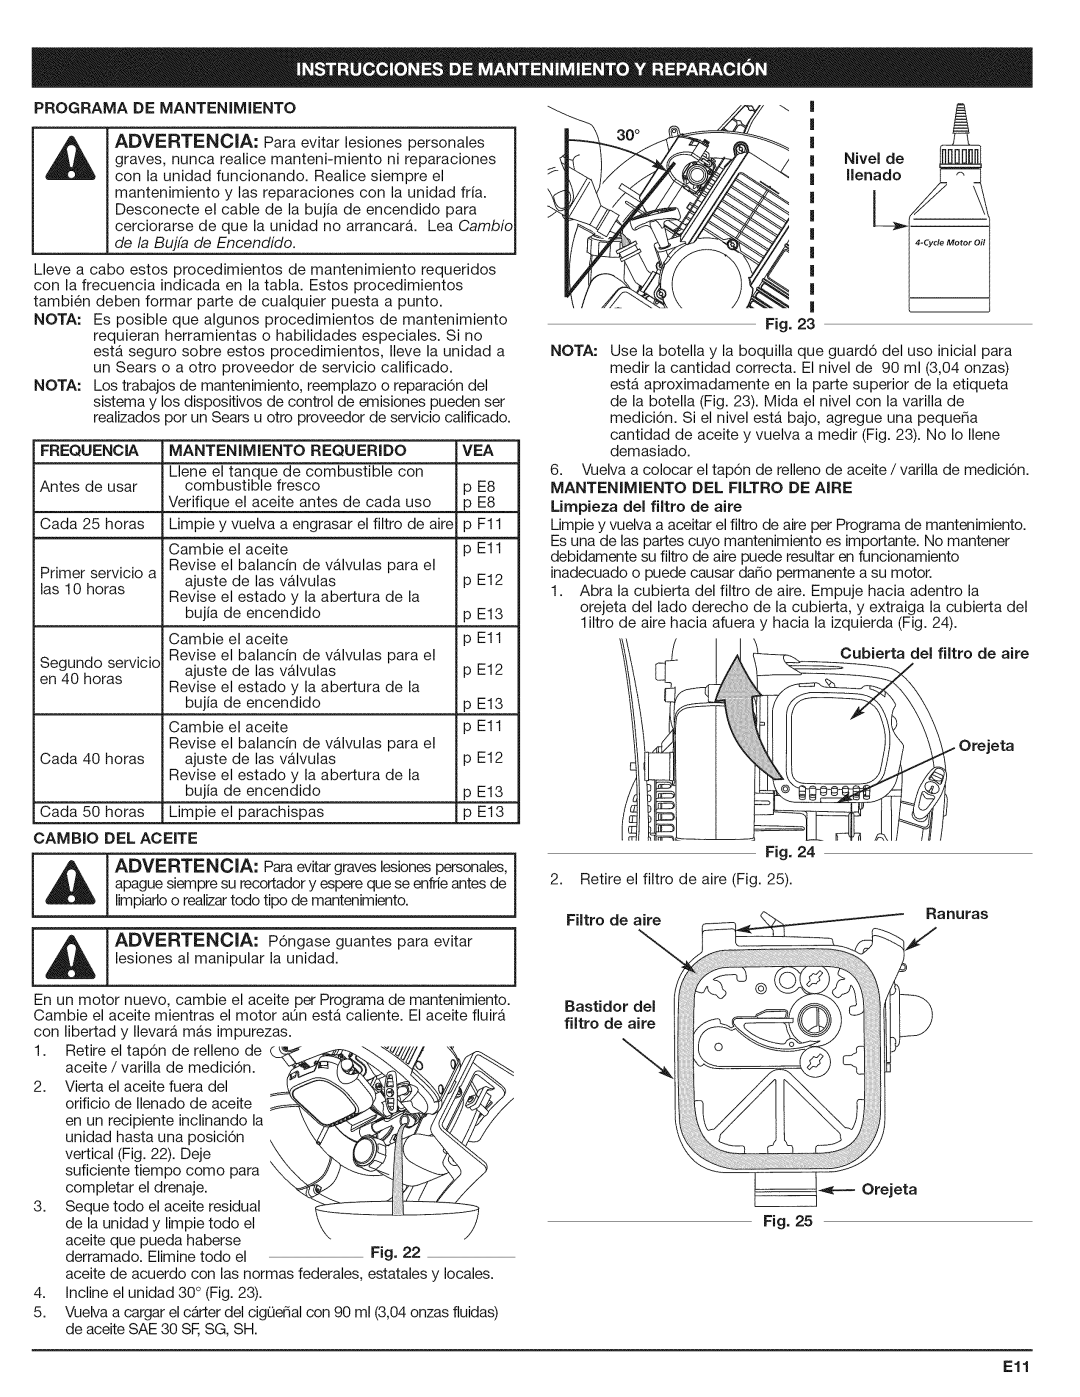 Craftsman 316.794801 Advertencia, Programa De Mantenimiento, Frequencia Mantenimiento Requerido Vea, Fig, Filtro de aire 